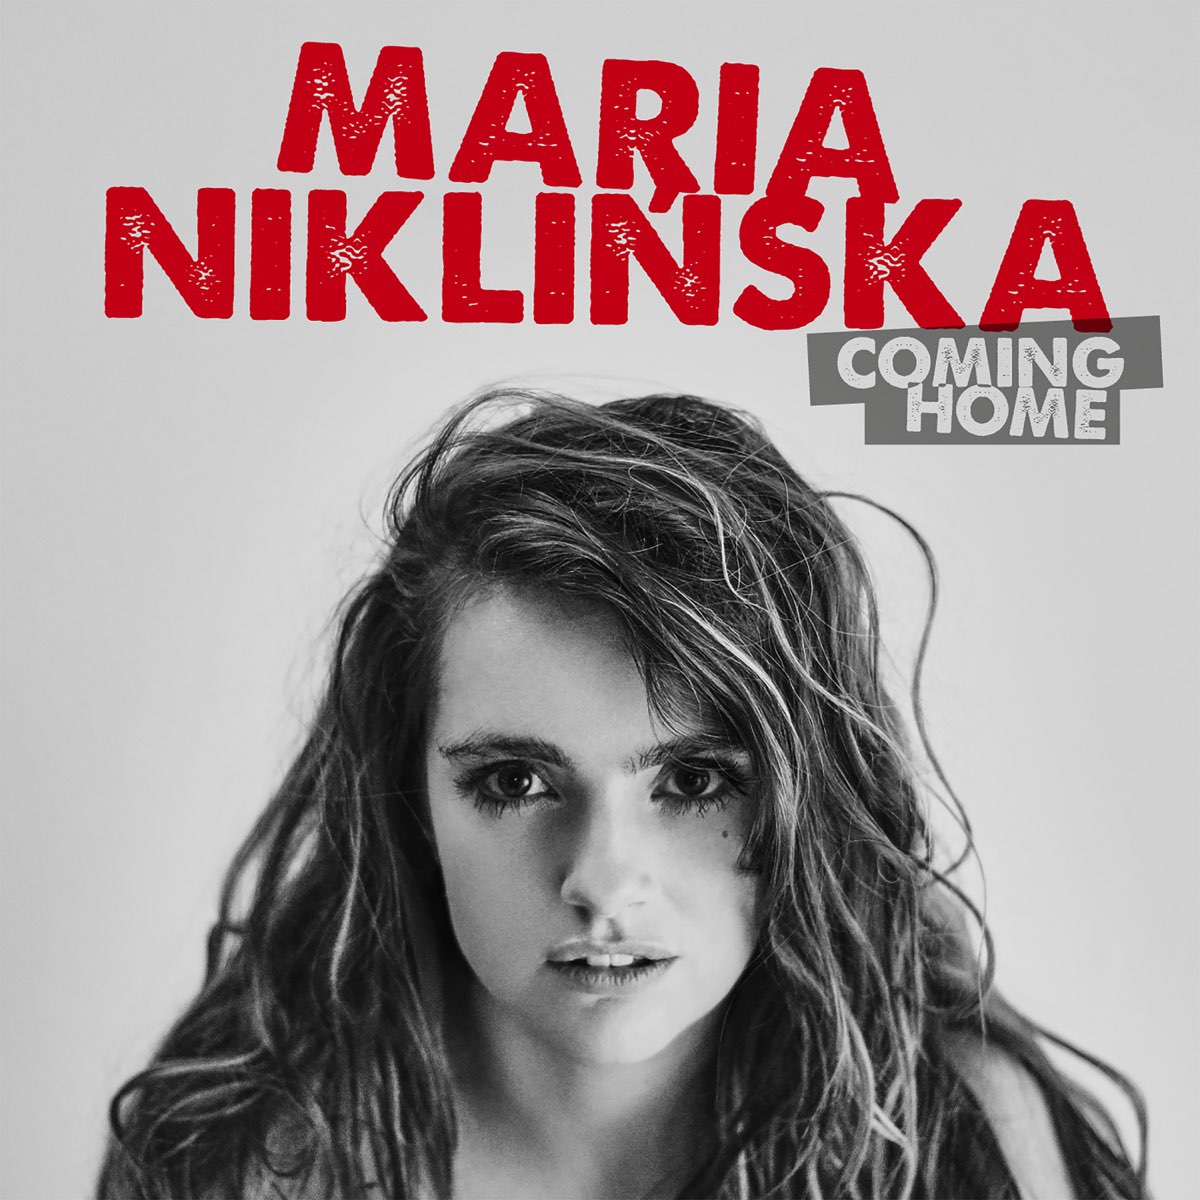 Maria music. Home Maria. Home Marie.